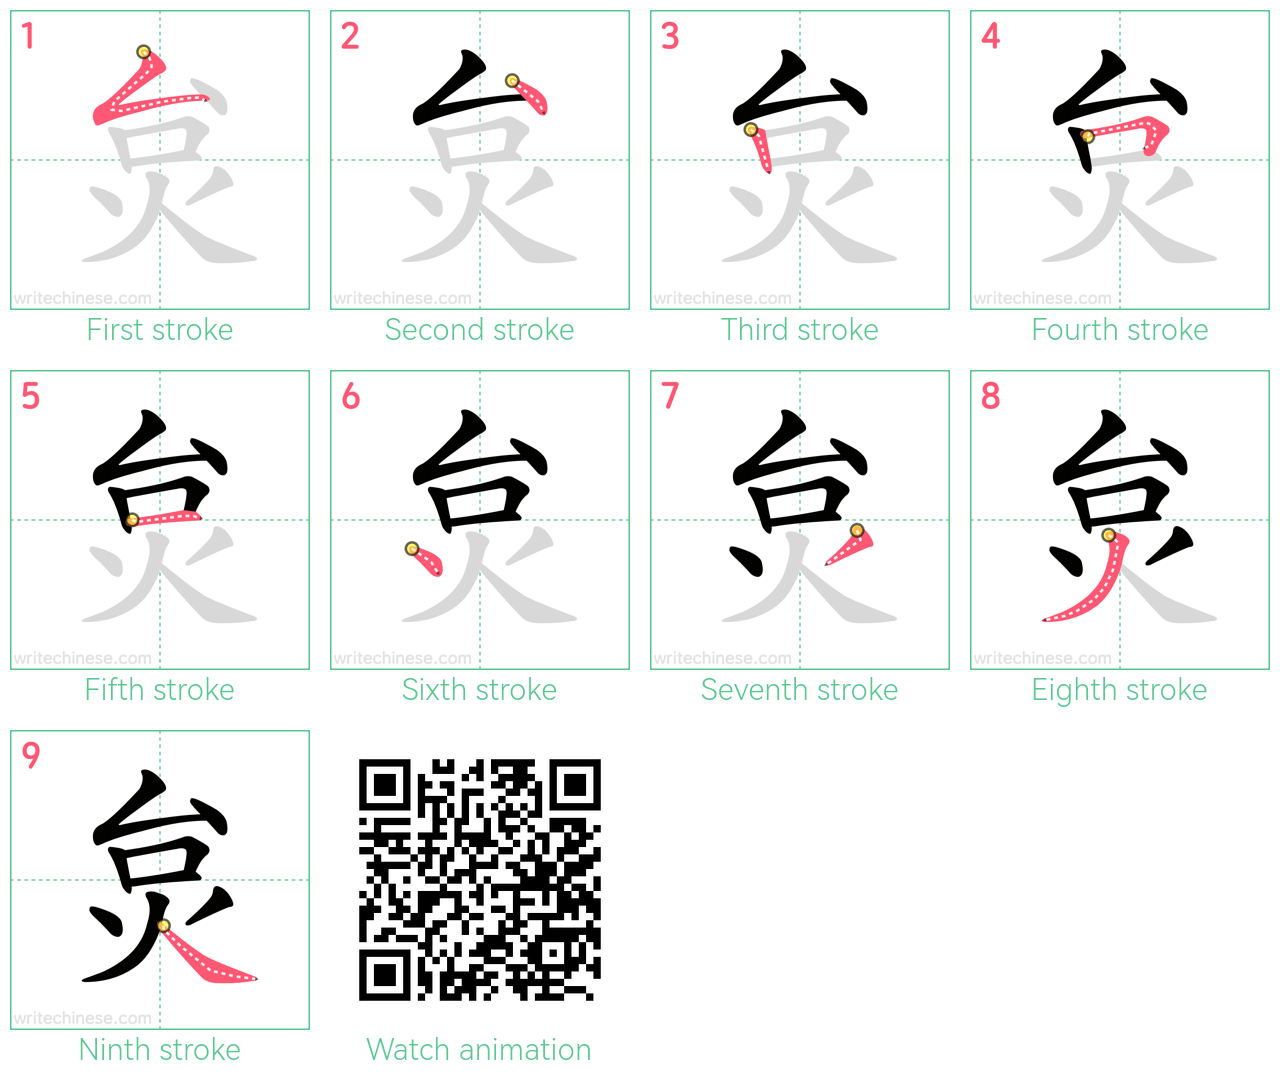 炱 step-by-step stroke order diagrams